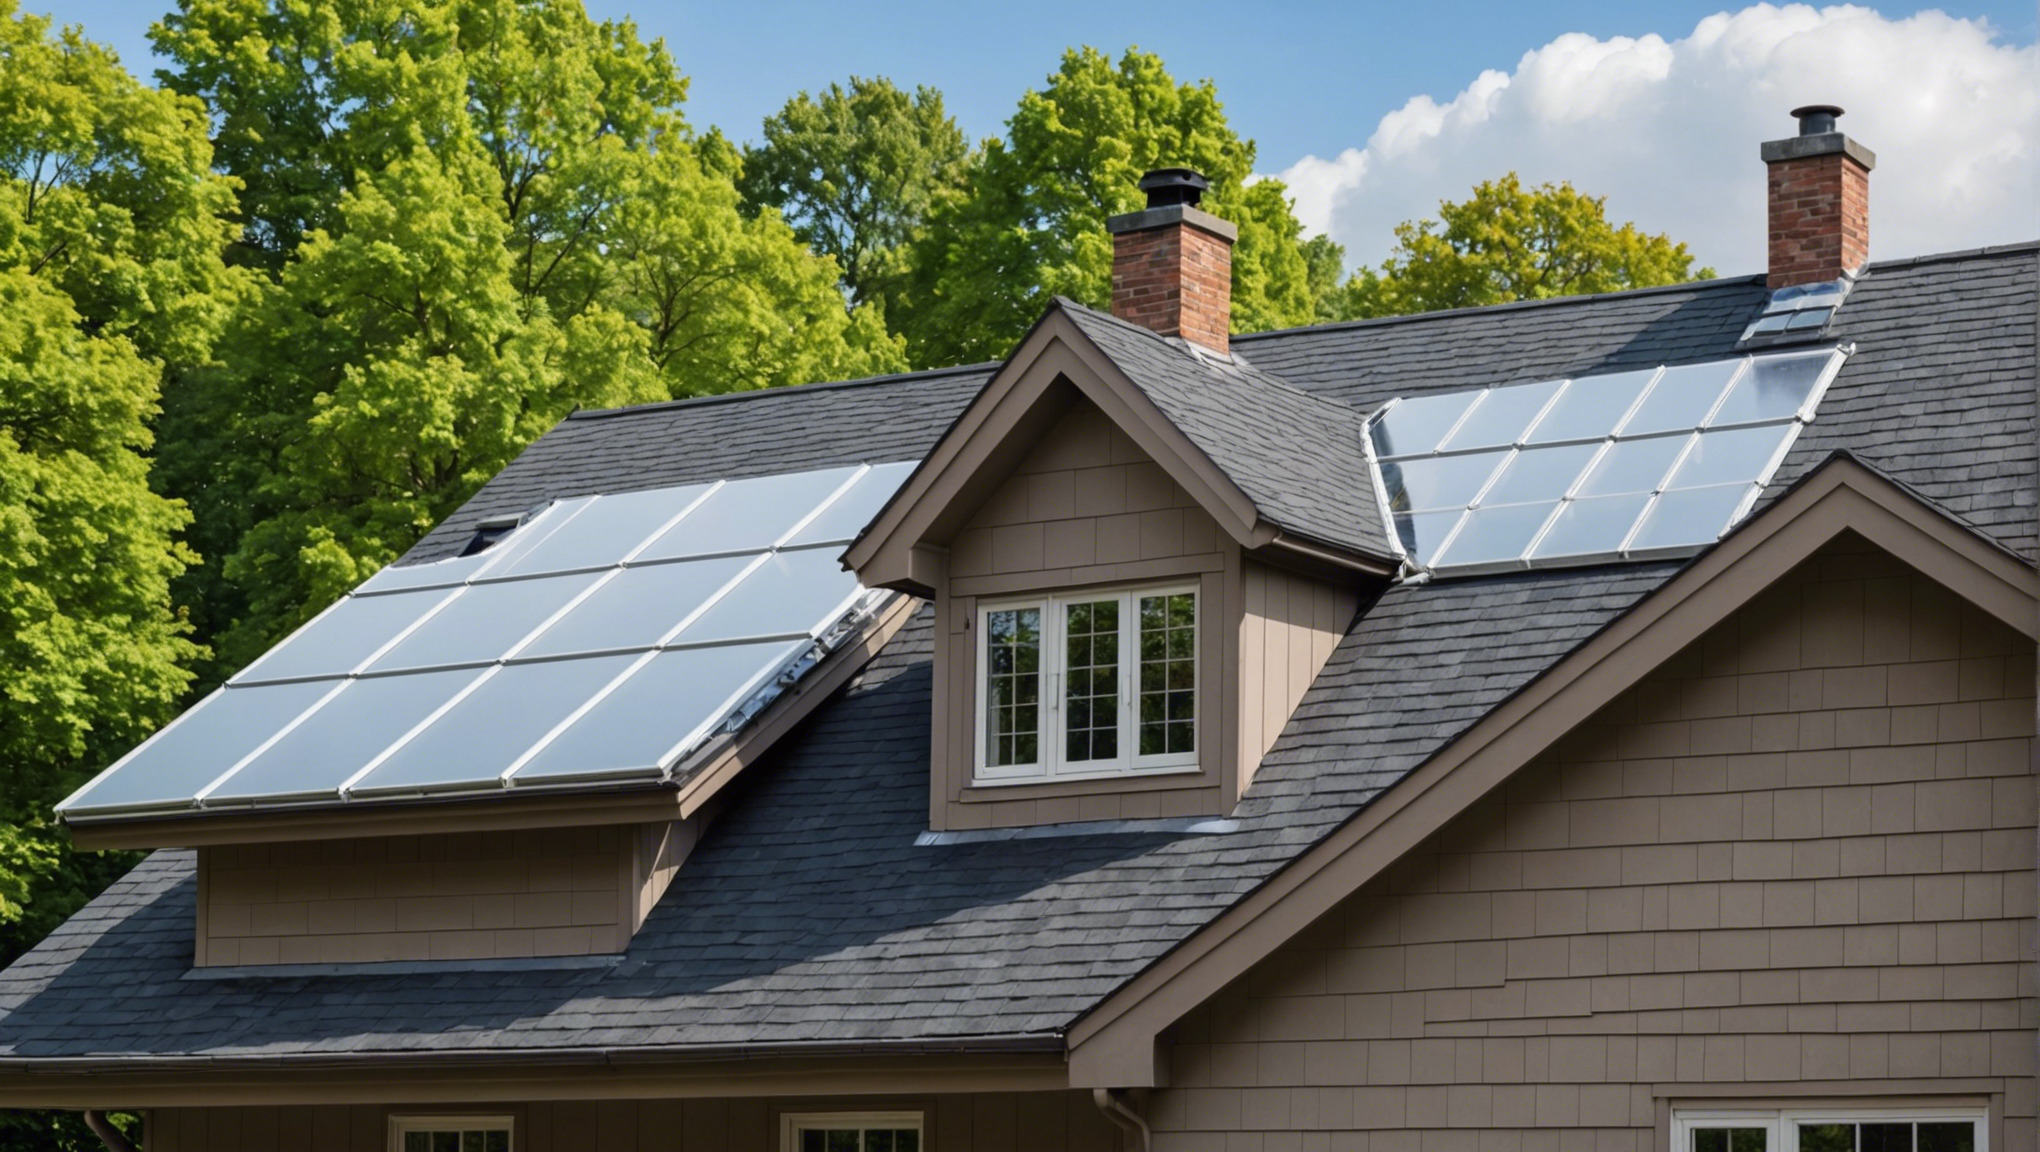 découvrez comment isoler sa toiture sans se ruiner et améliorer l'efficacité énergétique de votre logement avec nos conseils pratiques et économiques.